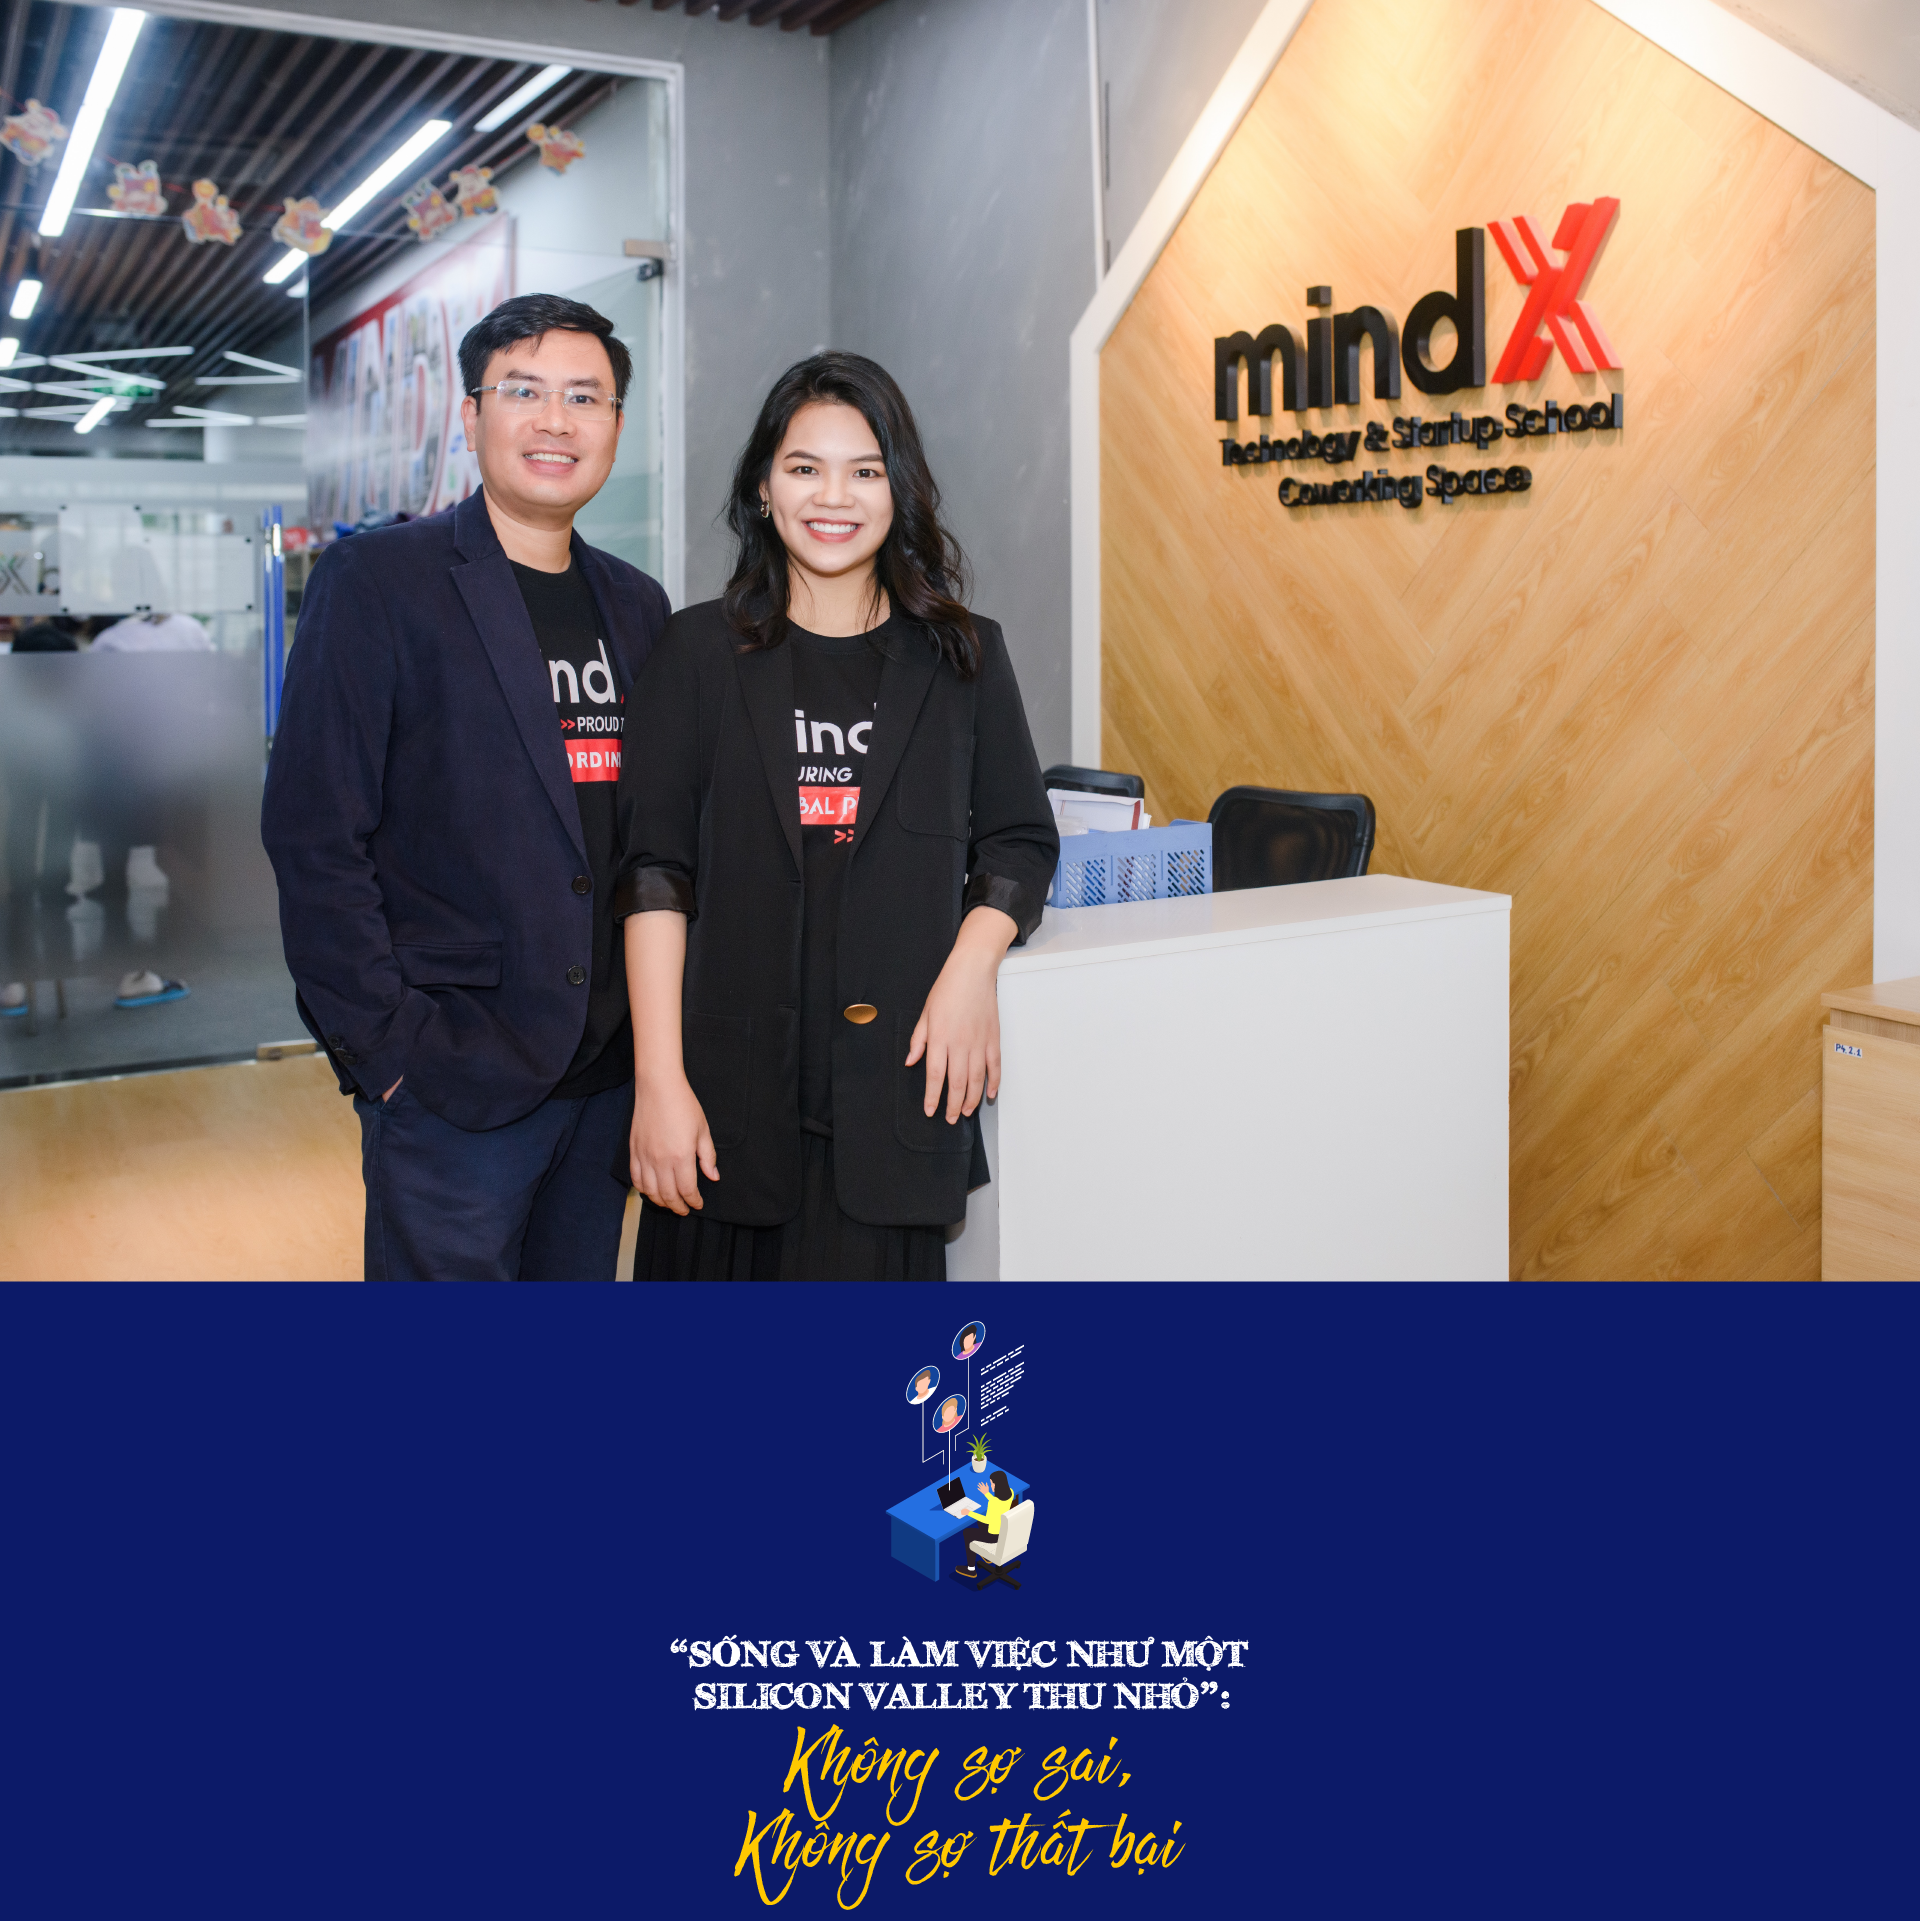 Co-Founder MindX: “Nếu không lì lợm, chúng tôi đã bỏ cuộc từ 3-4 năm trước” - Ảnh 4